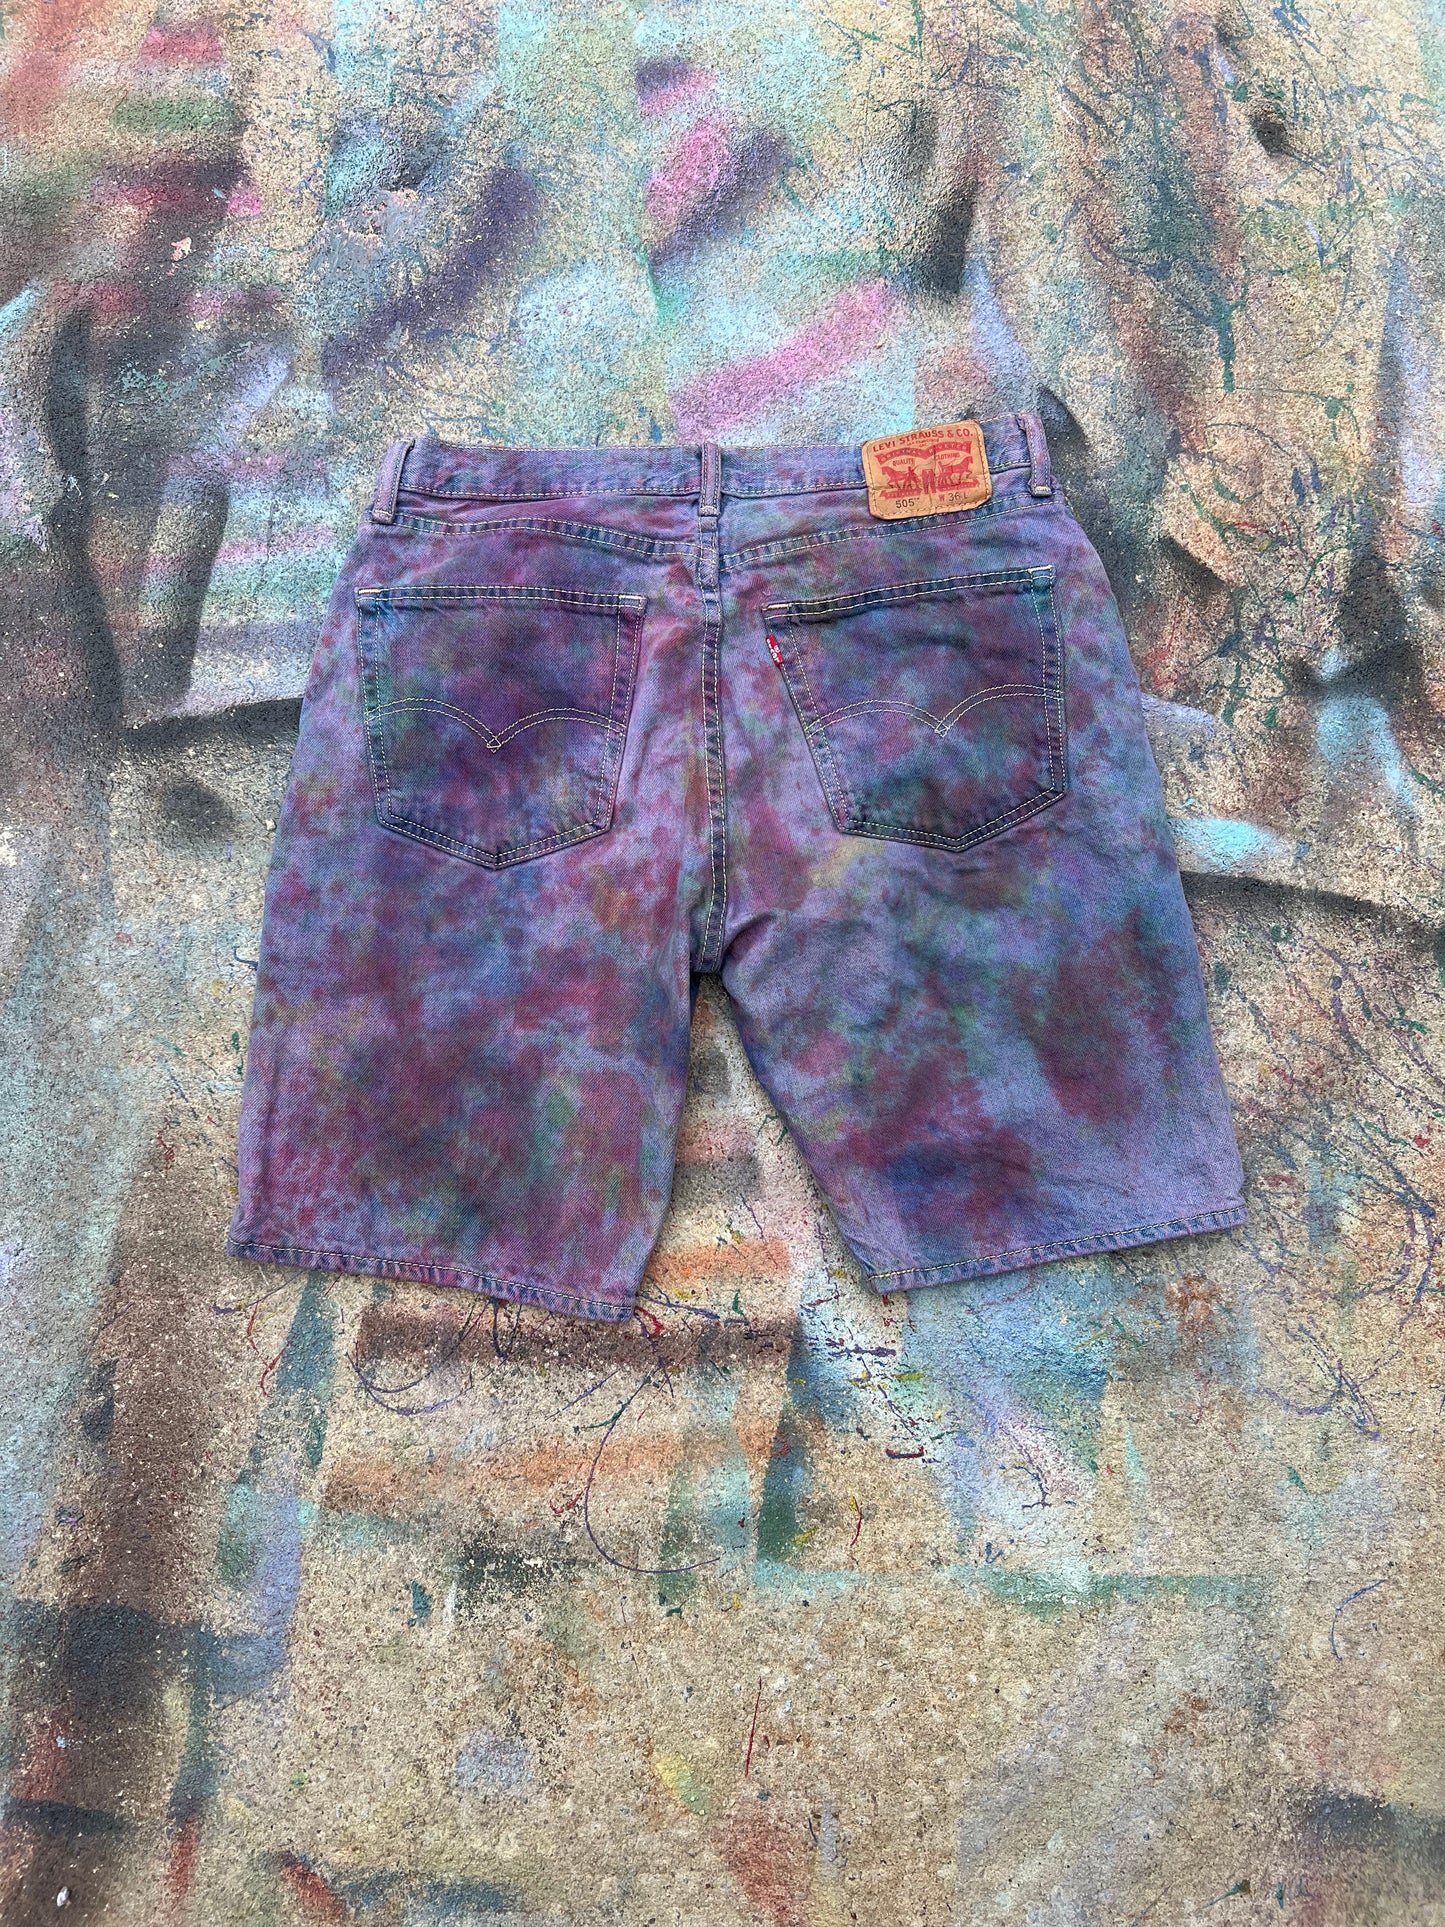 (LS) Tye Dye Jean Shorts #3 (Multicolor) - 36